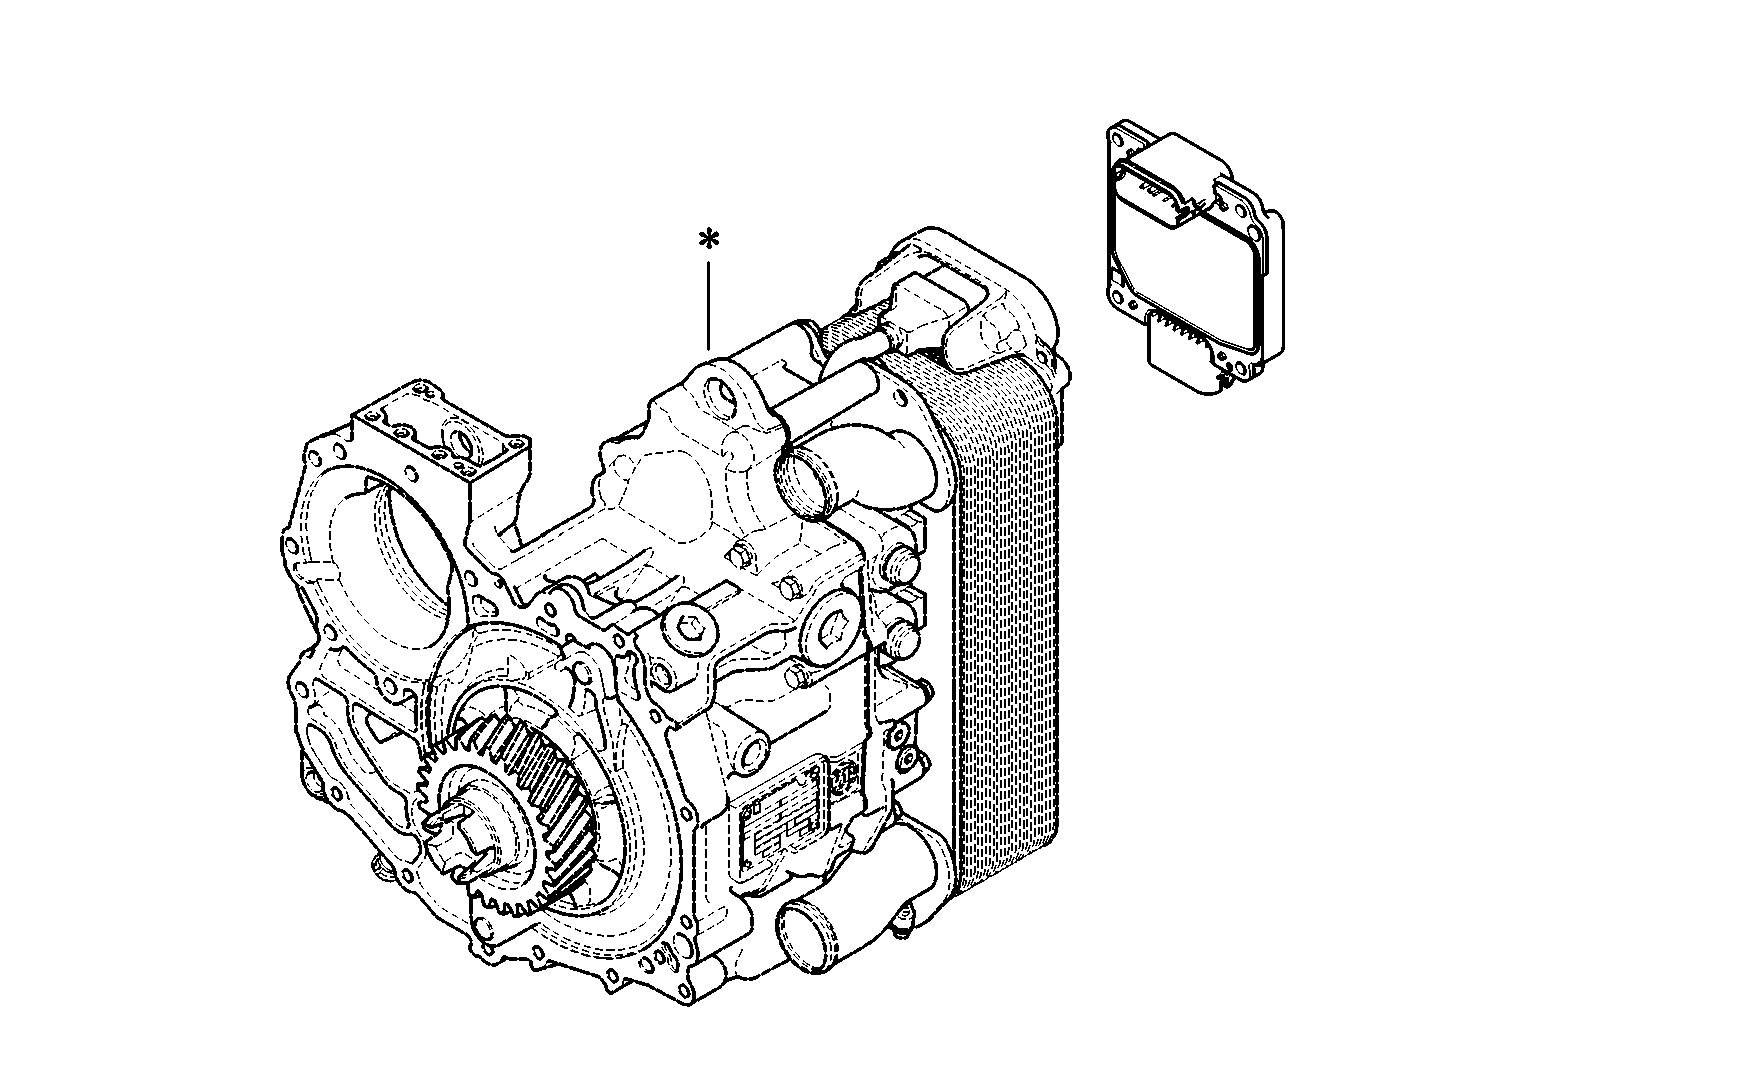 drawing for DAF 1830276 - EST 52 (figure 2)